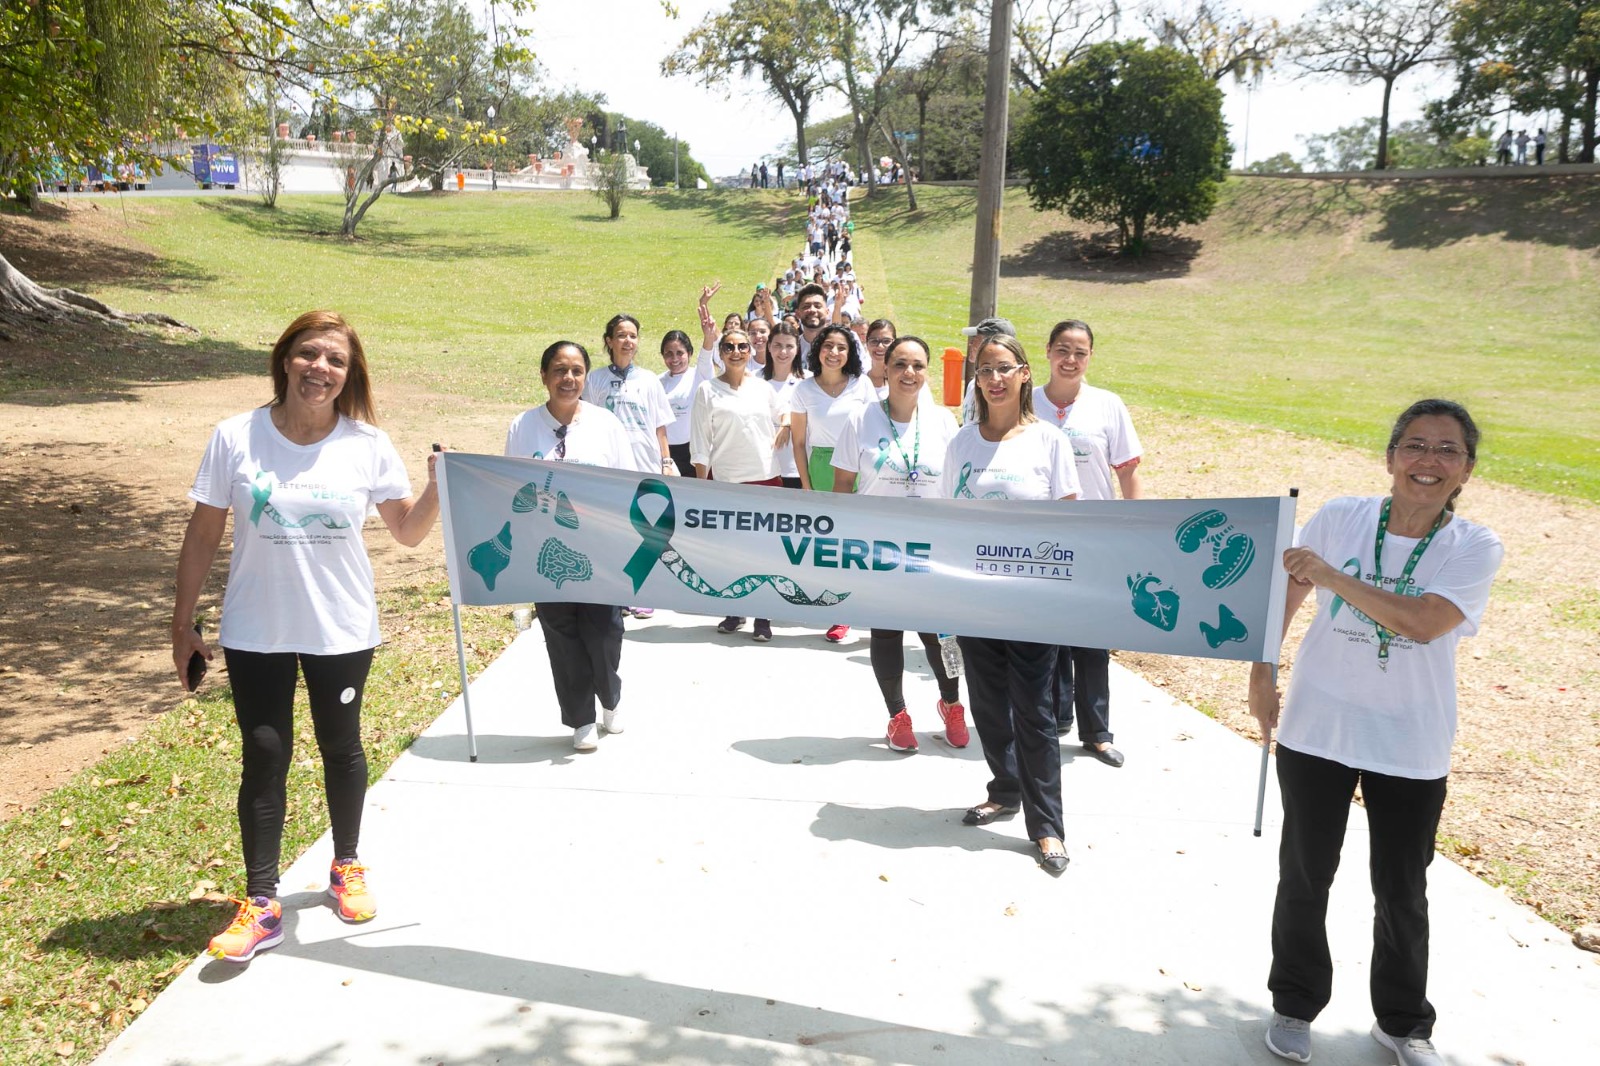 Quinta D'Or promove caminhada solidária em prol do transplante de órgãos (Foto: Divulgação)